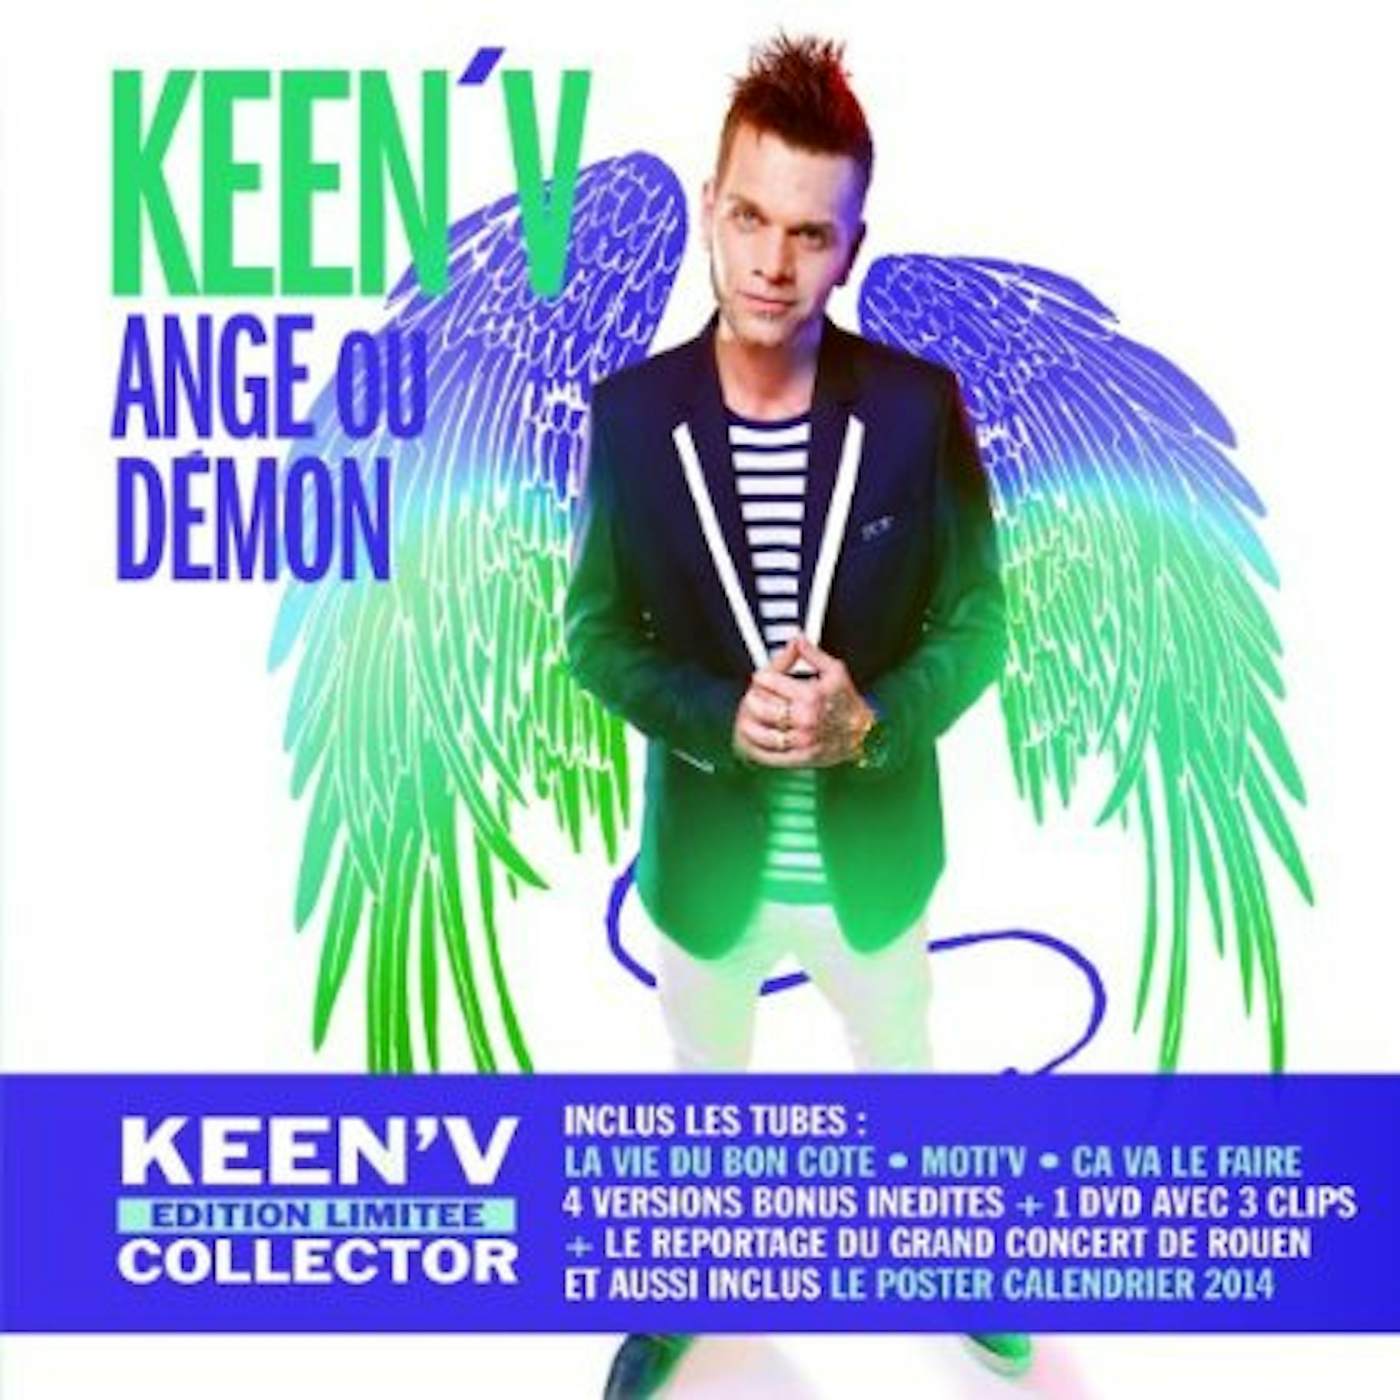 Keen' V 223752 ANGE OU DEMON CD